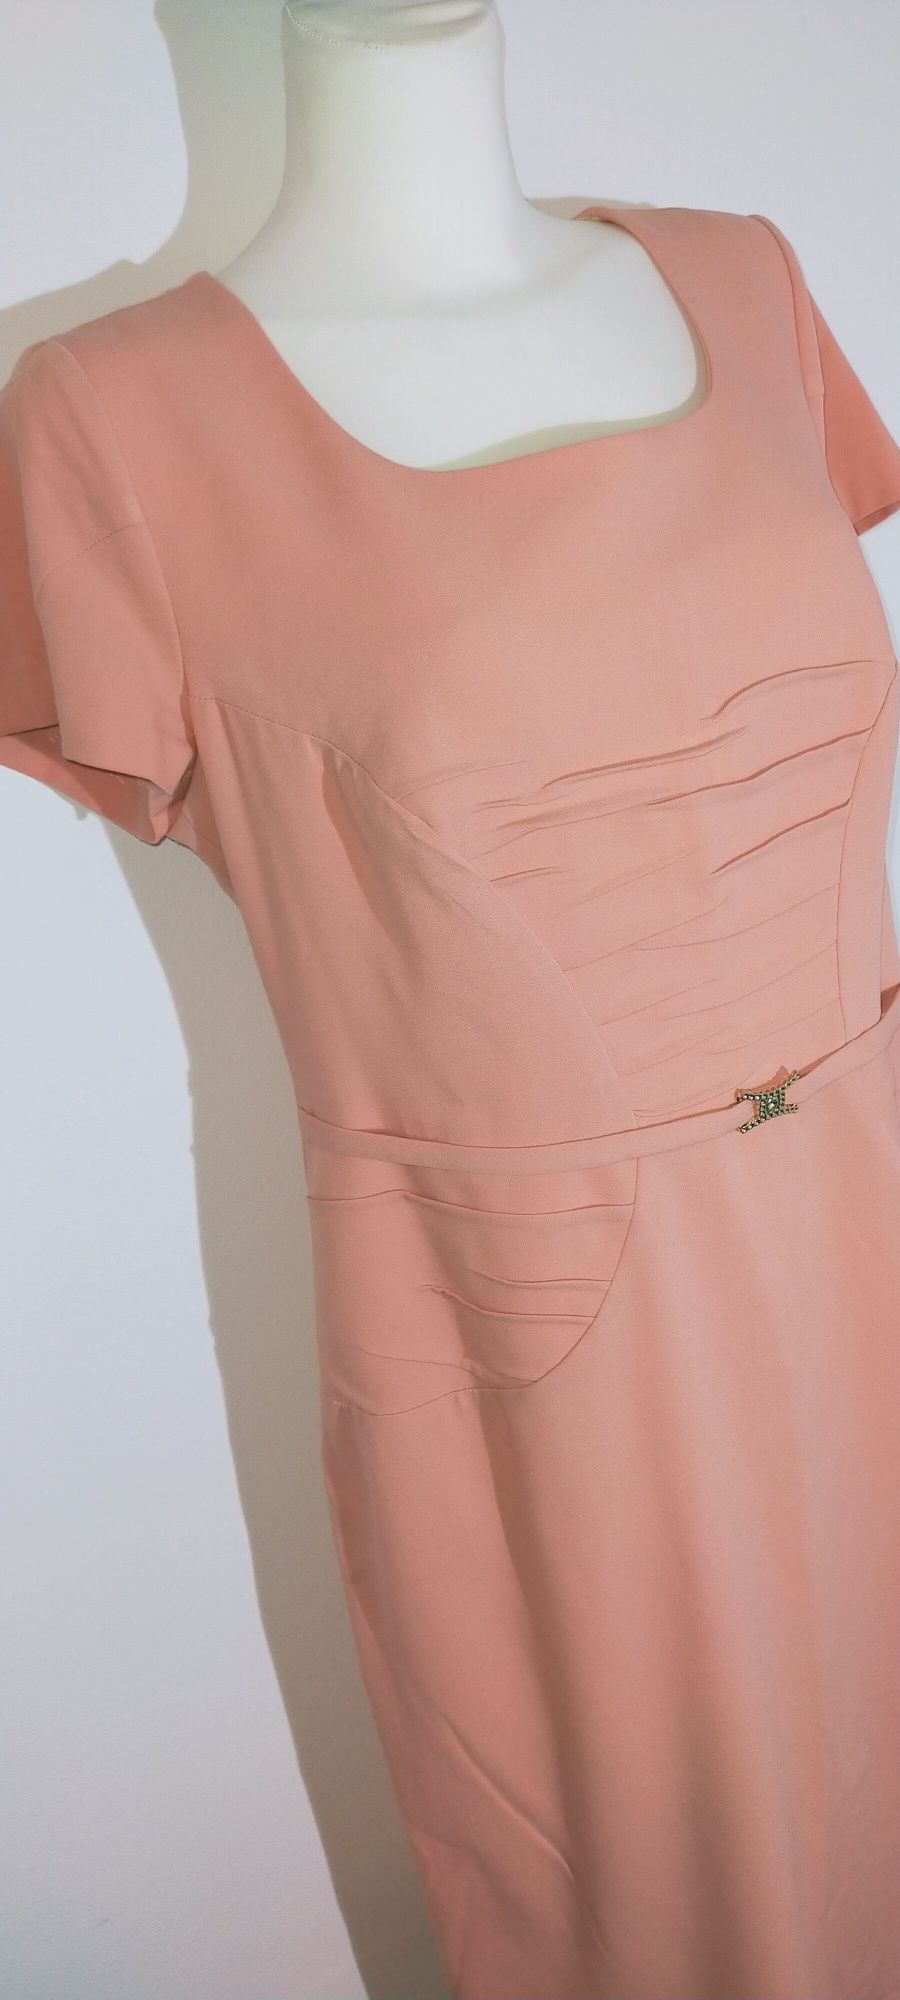 Sukienka midi ołówkowa żakiet garsonka komplet 42 xl malinowy